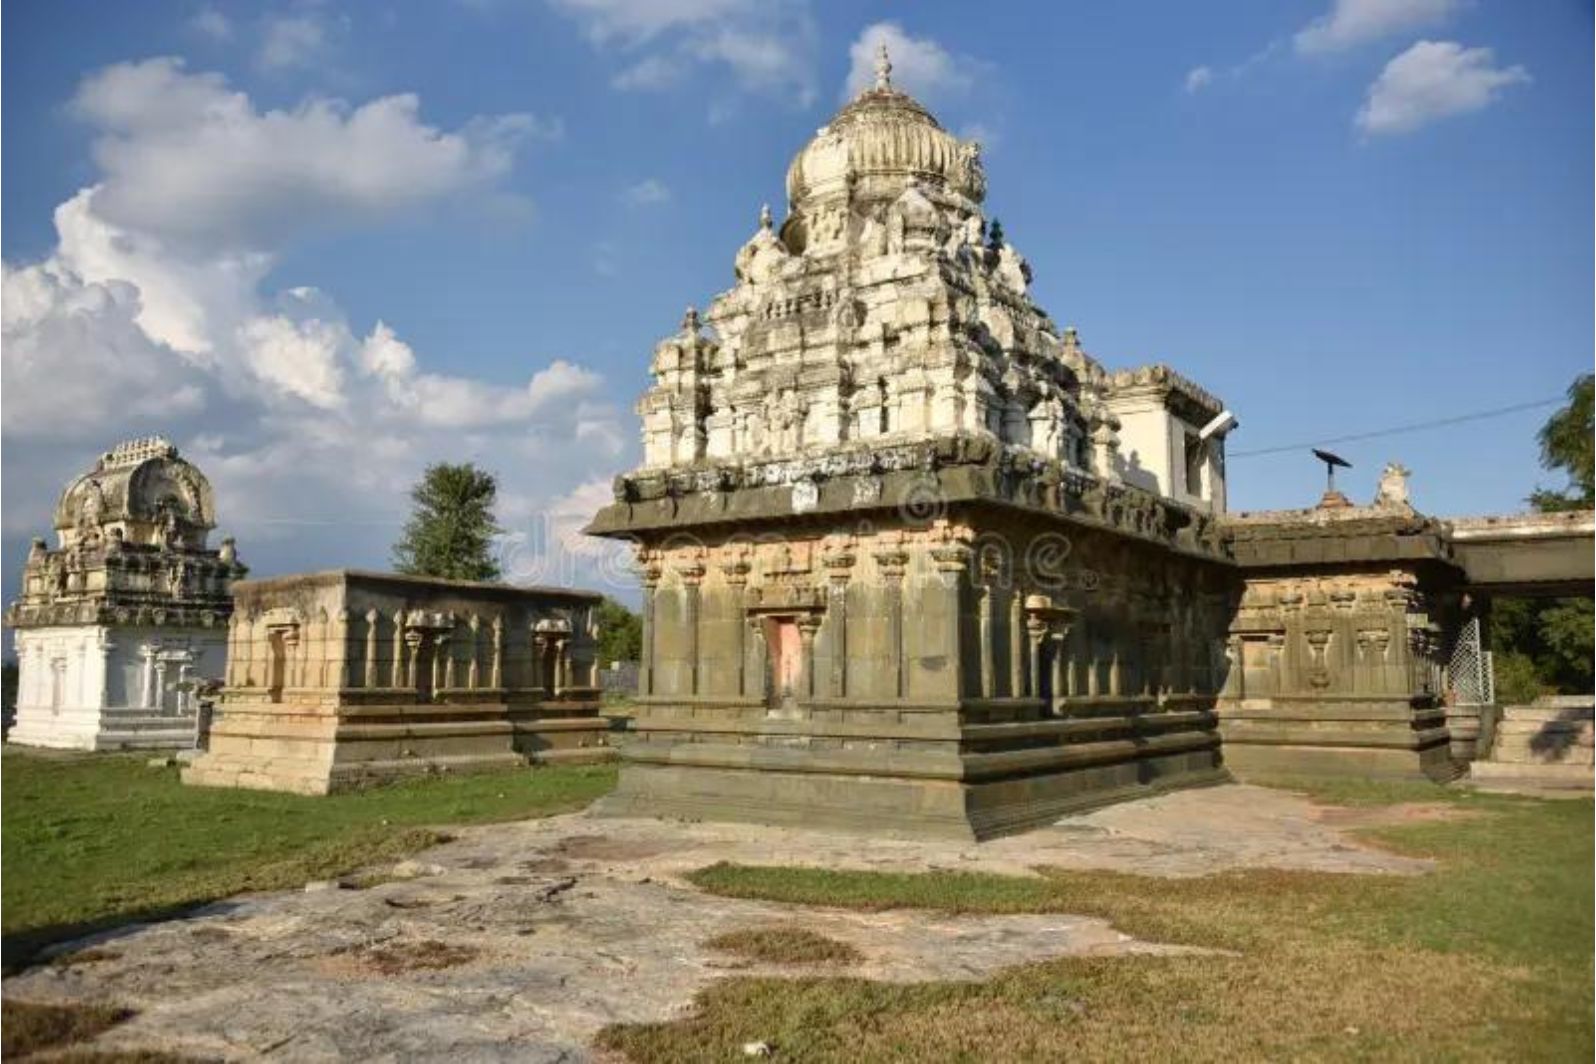 kurudumale ganesha temple kurudumale karnataka 563131